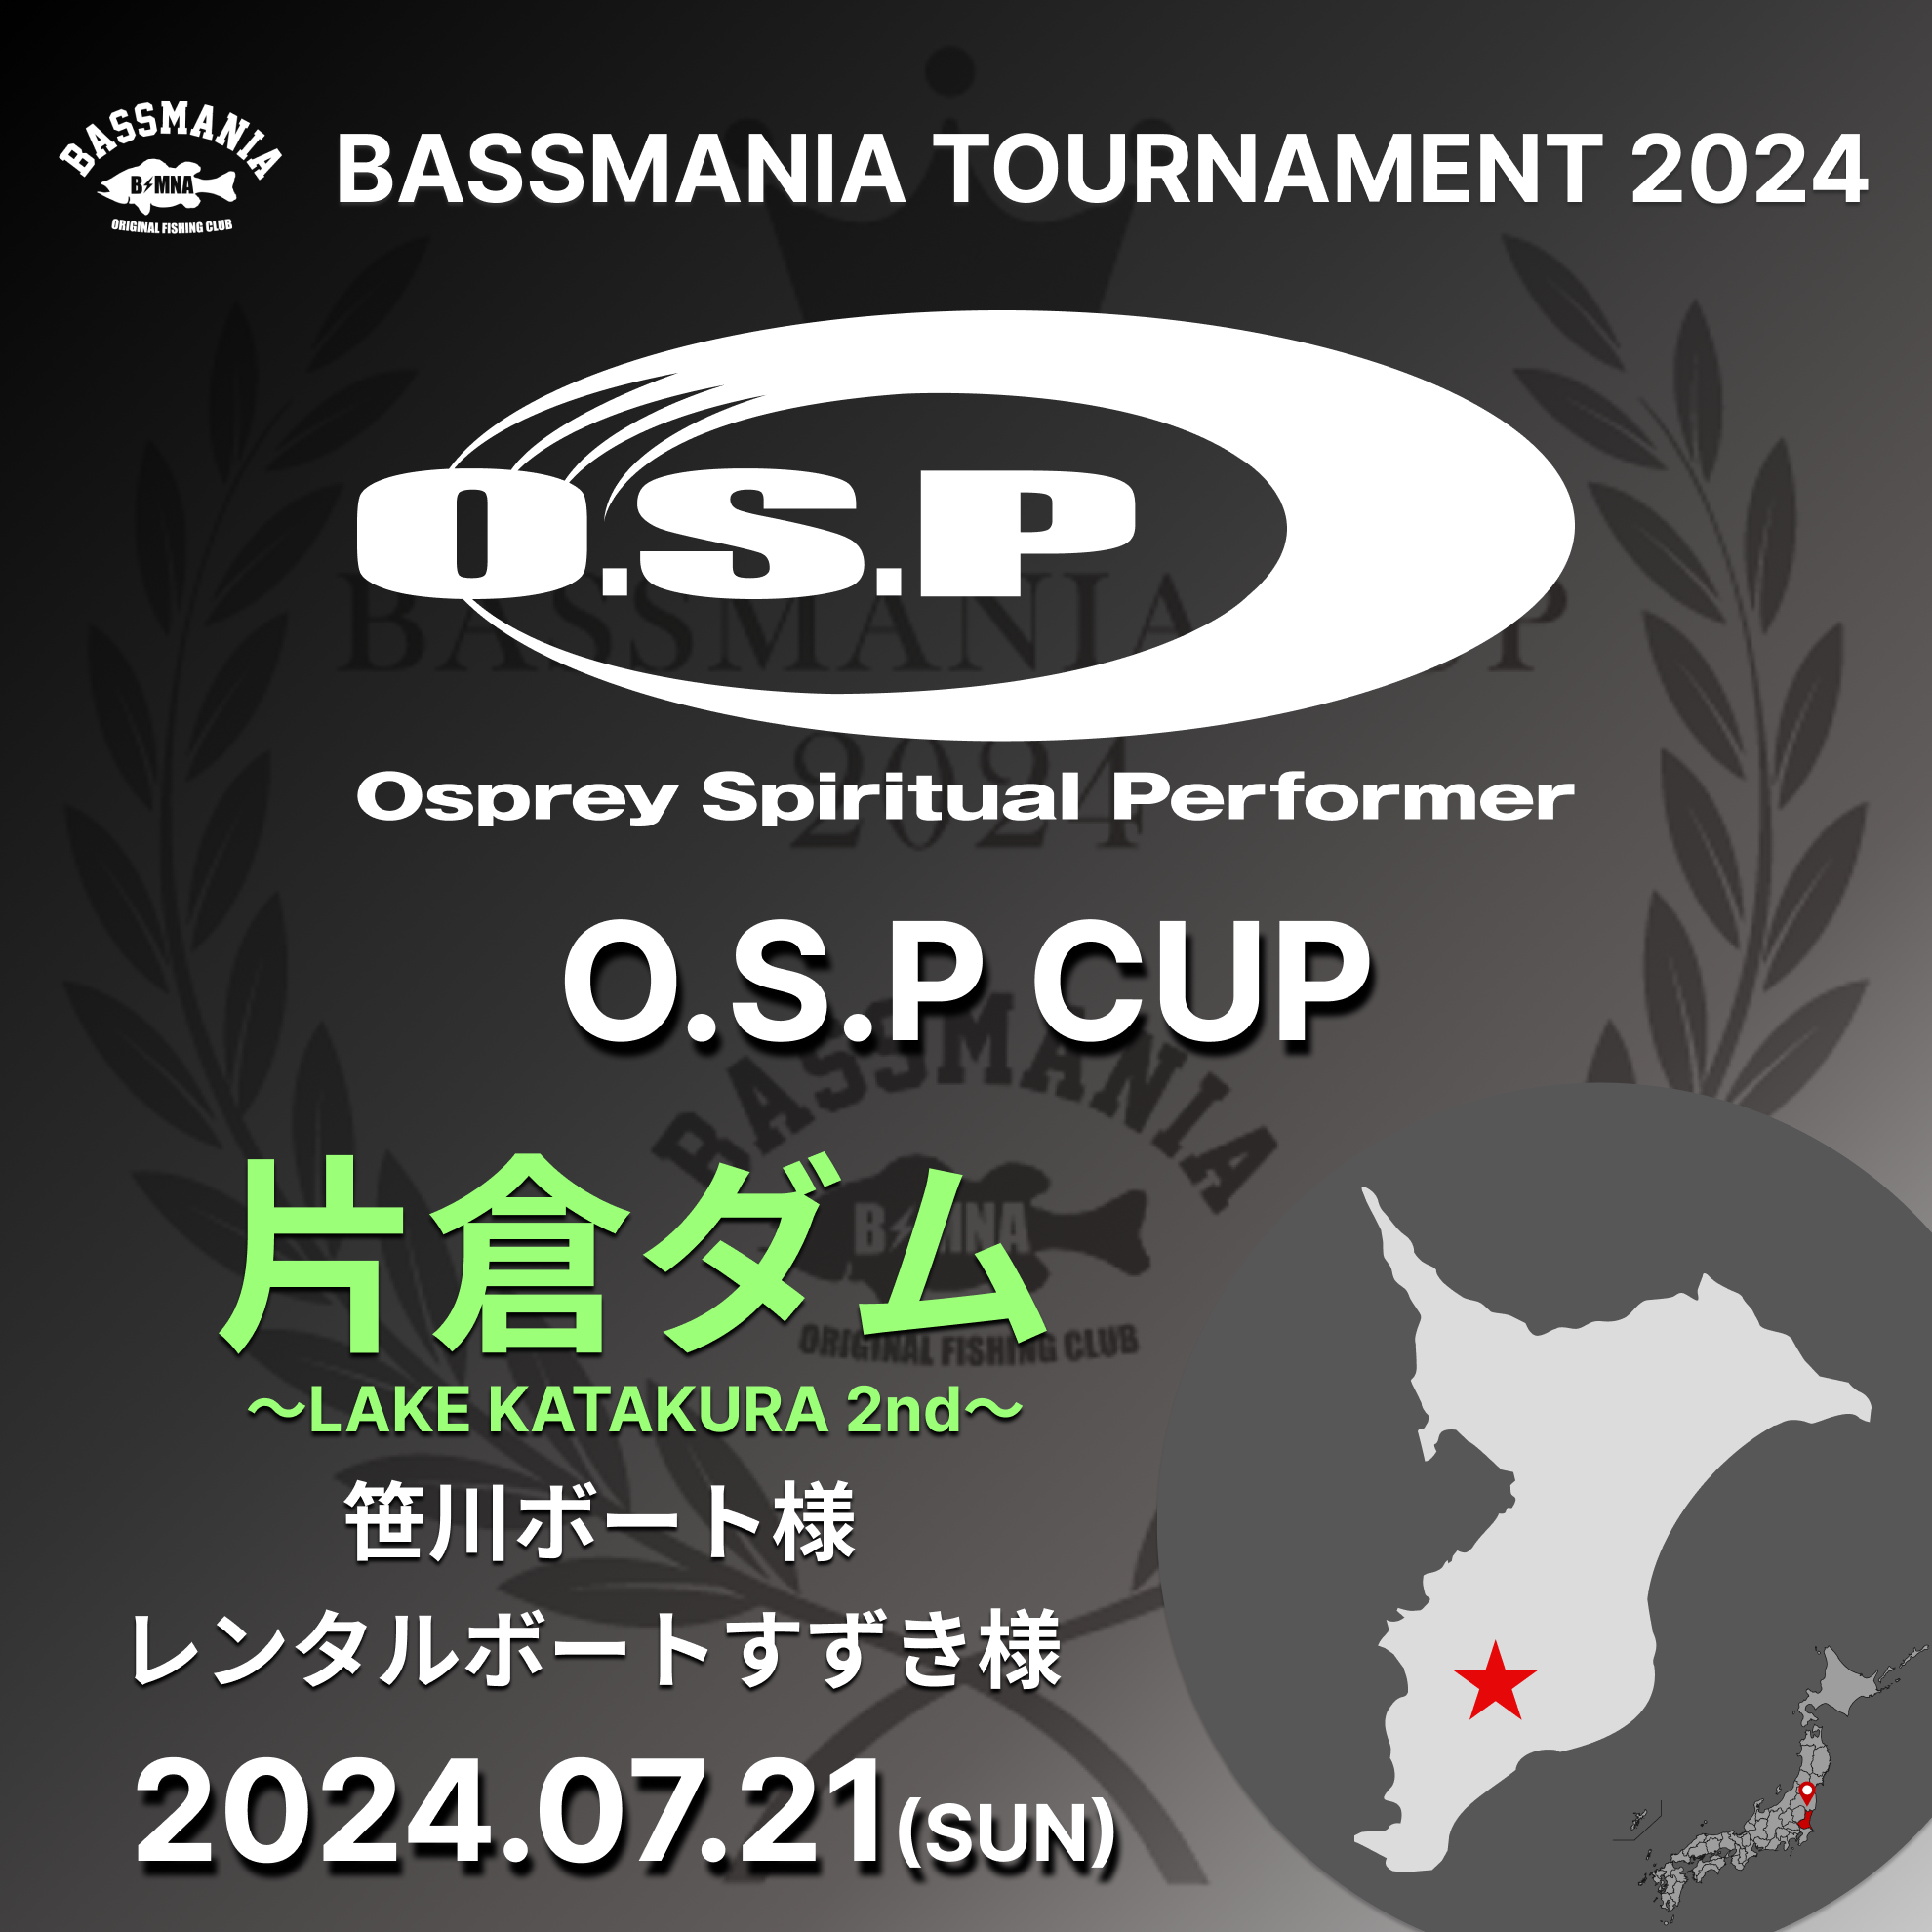 BASSMANIA TOURNAMENT 2024 ~LAKE KATAKURA 2nd~